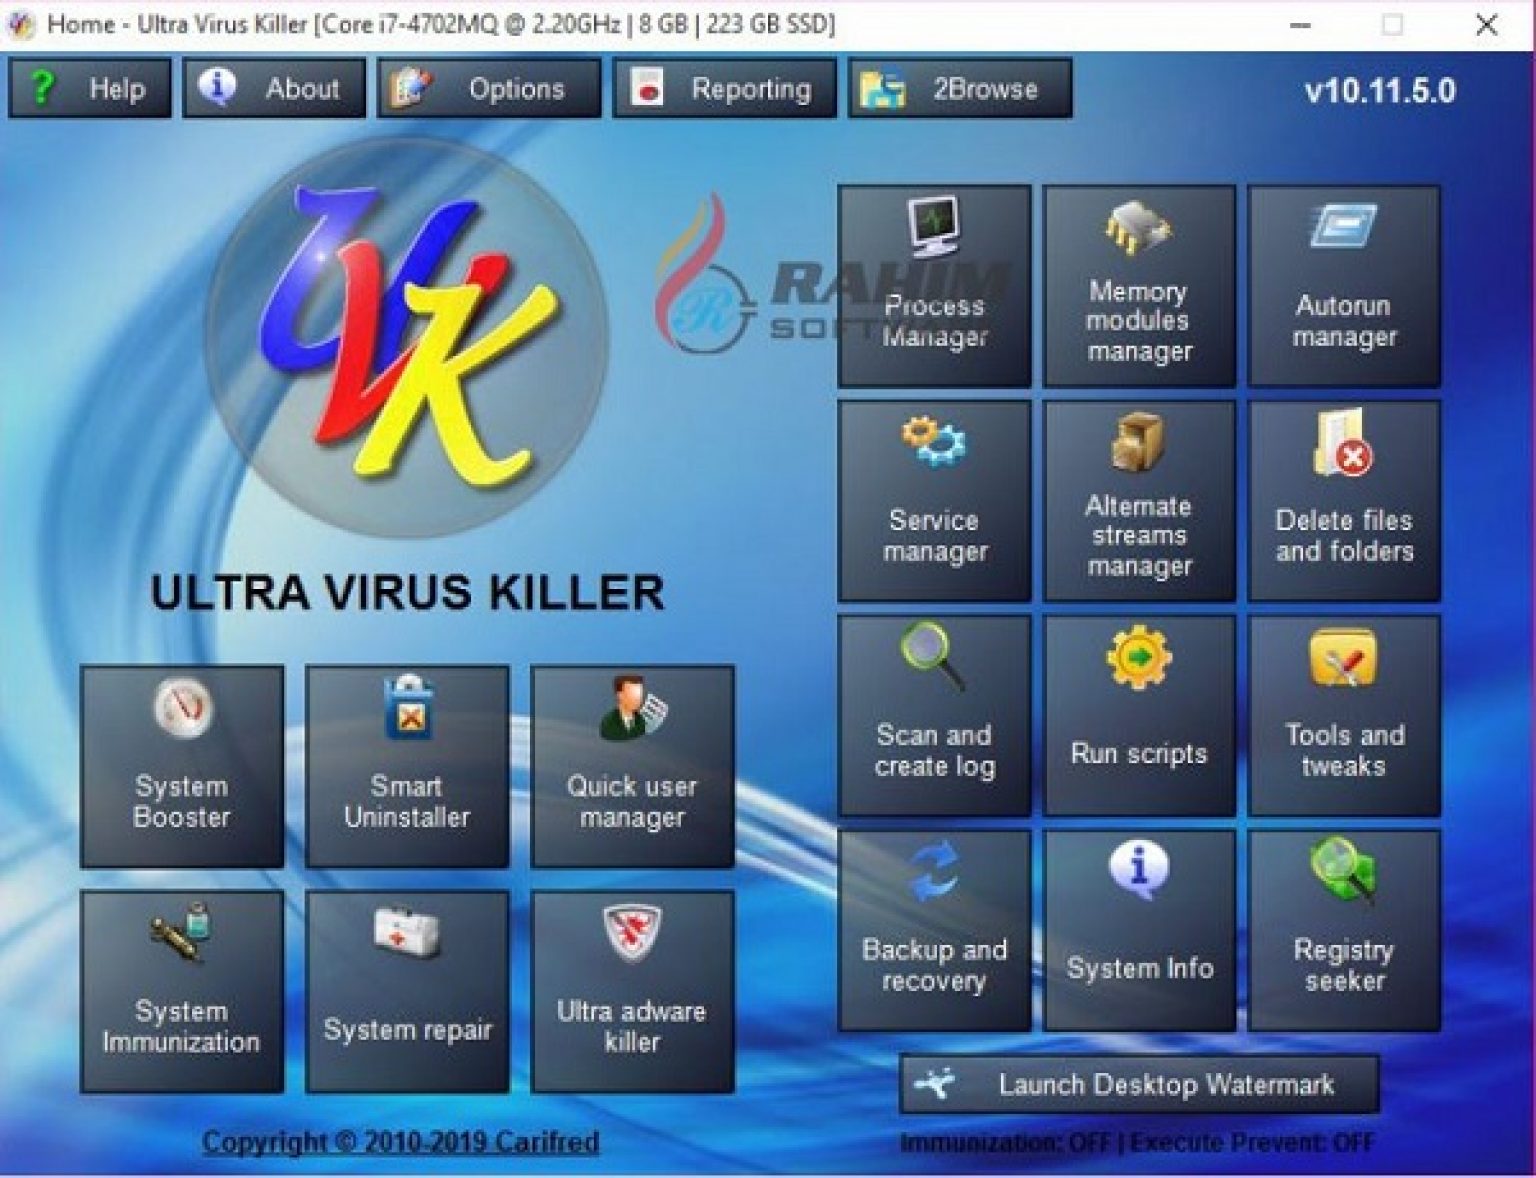 uvk ultra virus killer full download torrent